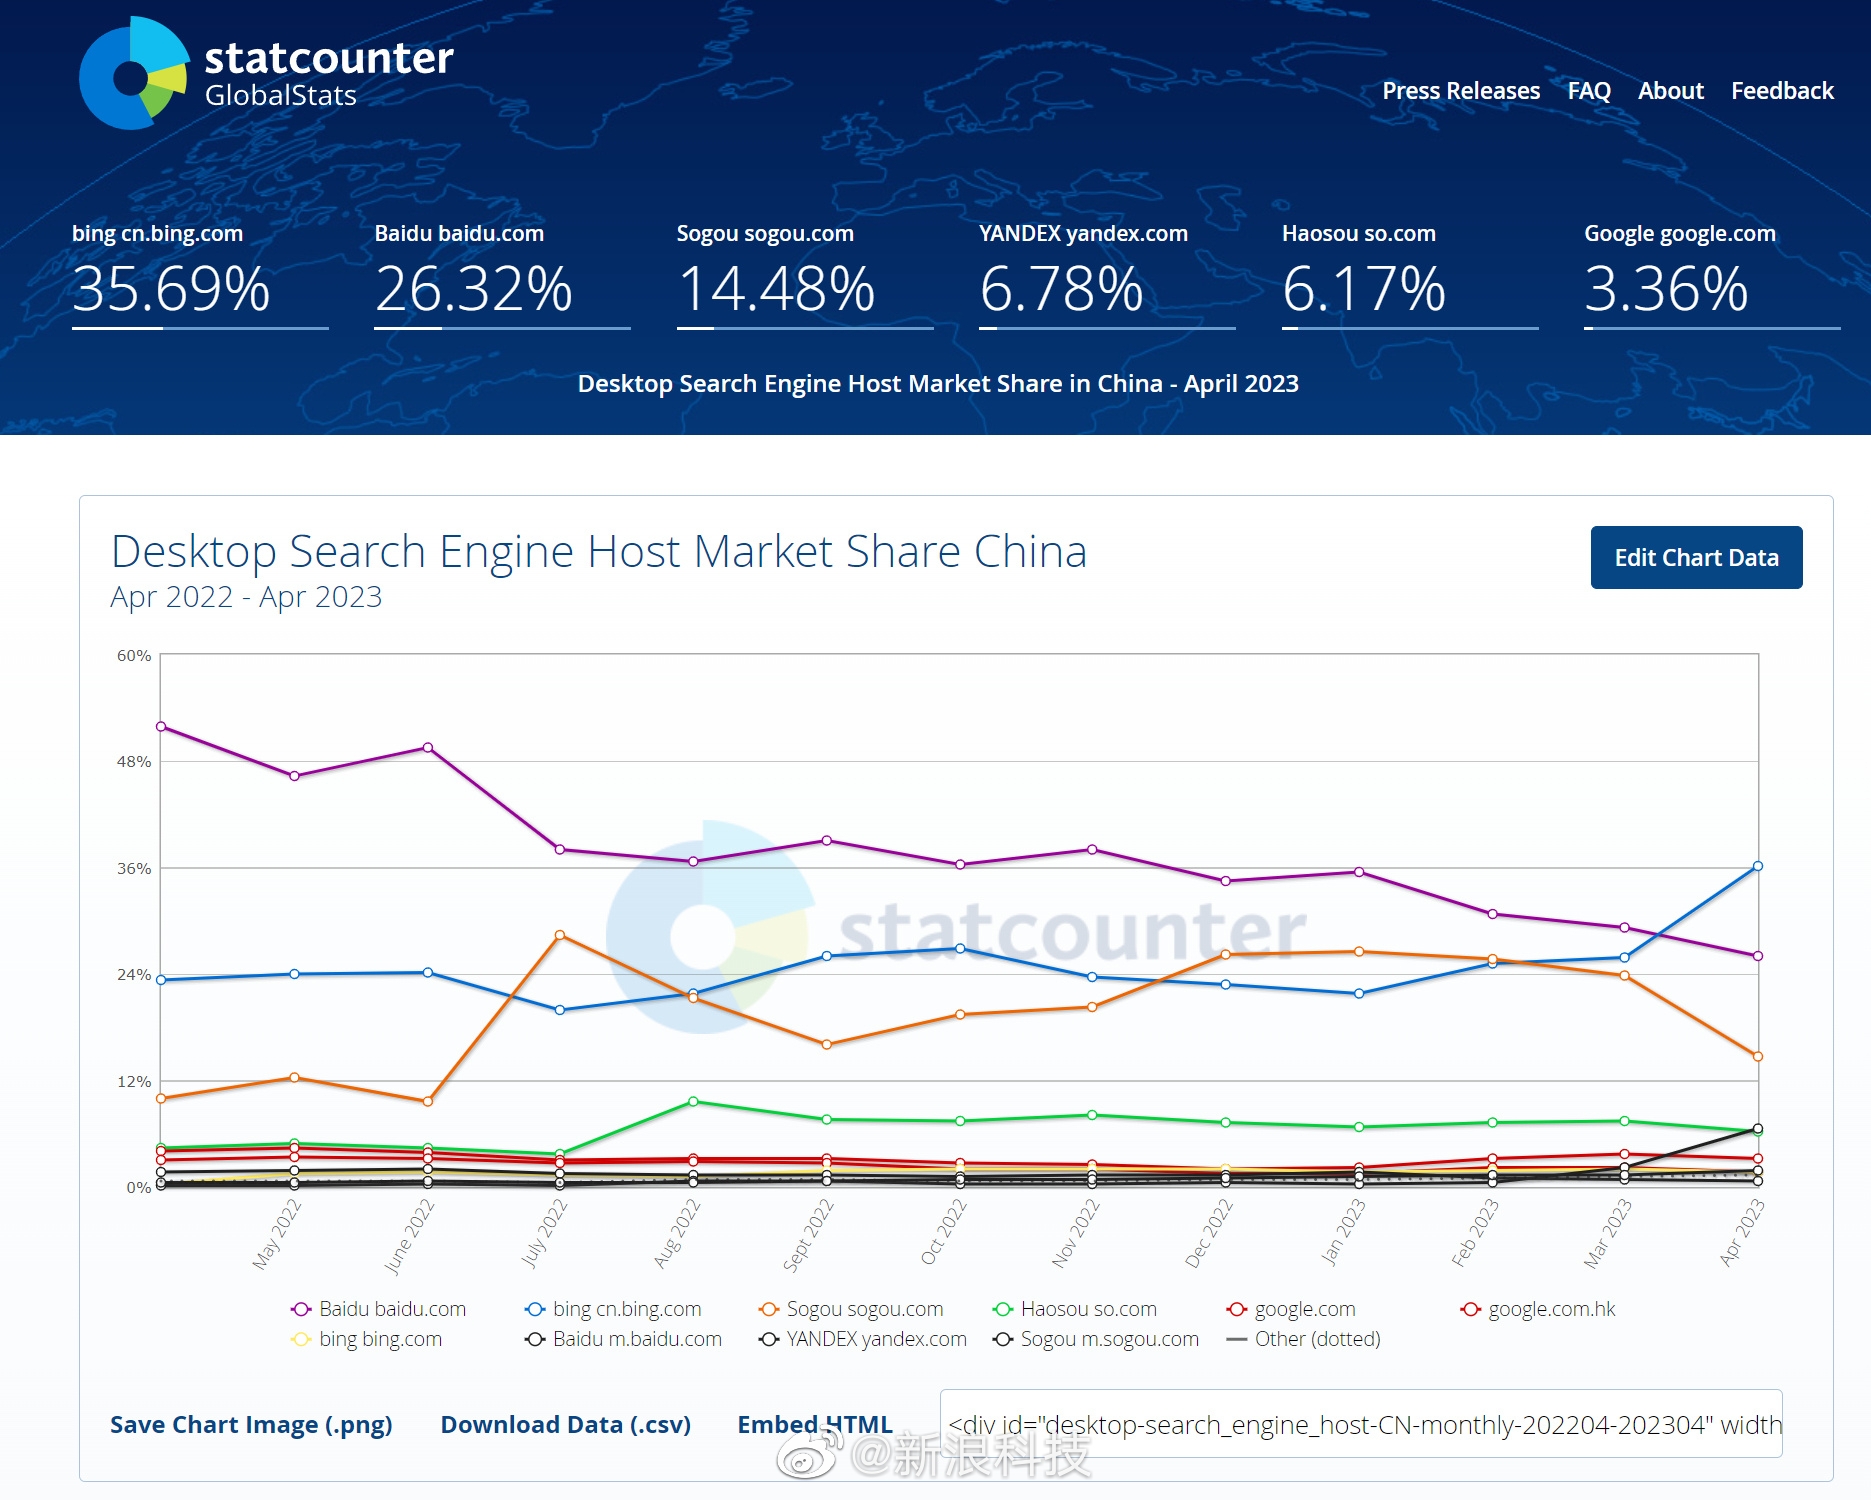 微软取代百度成中国第一大桌面搜索引擎